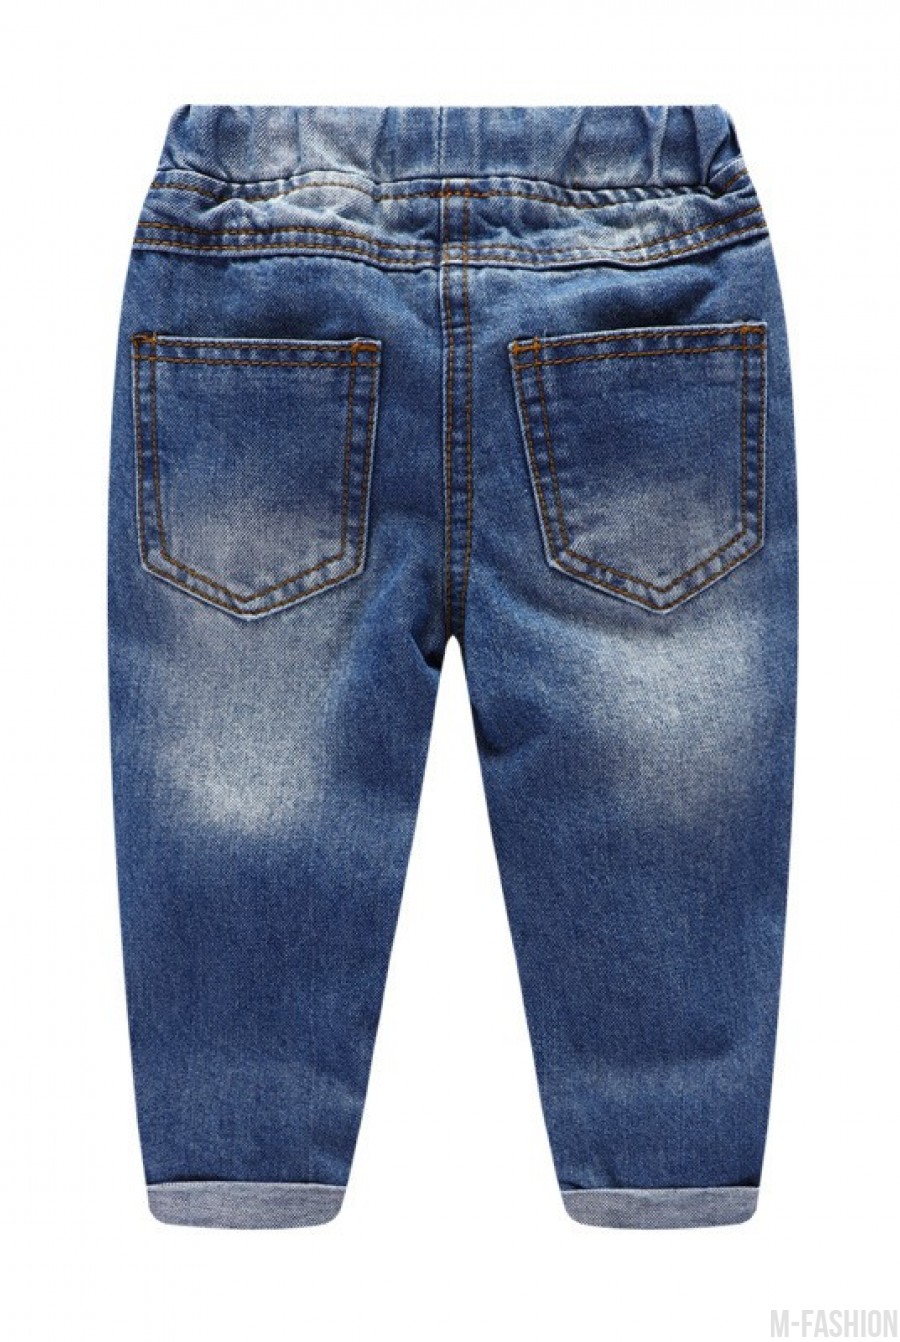 Модные джинсы "бойфренда" с заплатками и потертостями- Фото 3